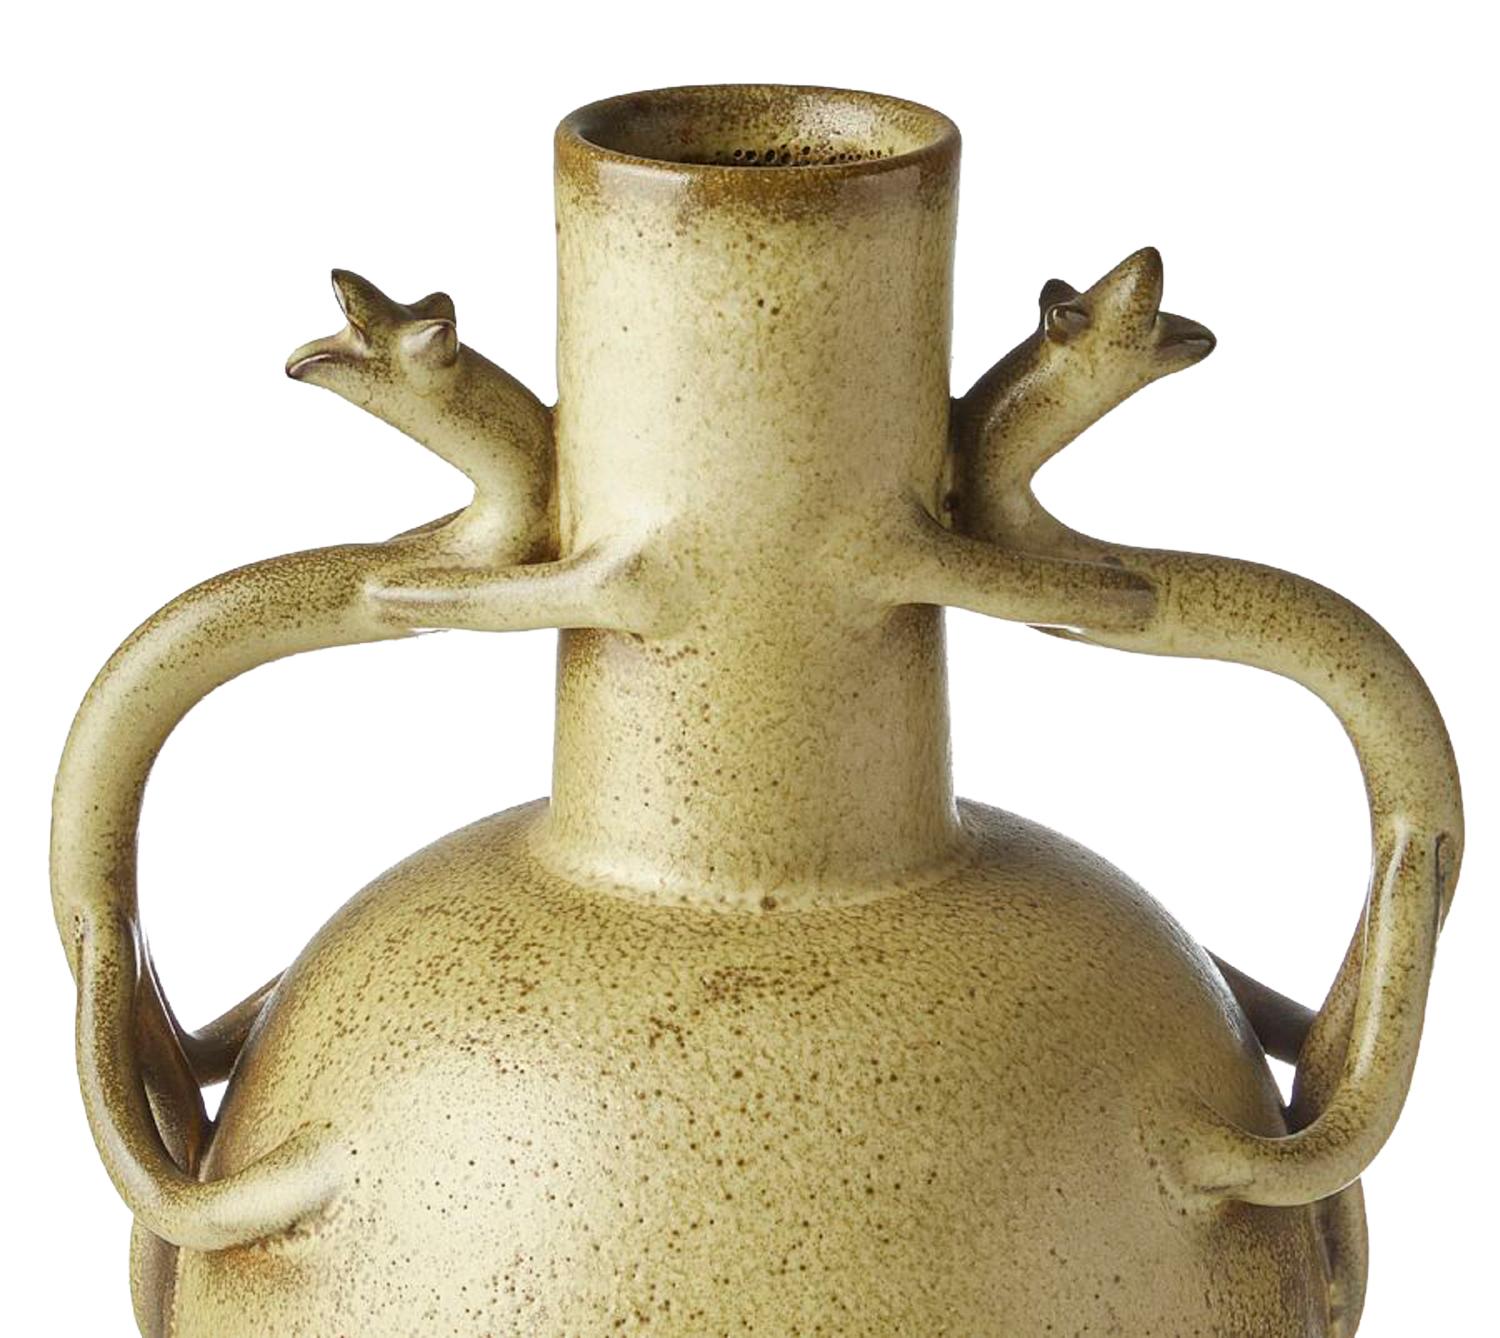 Vase moderne suédois moucheté de vert avec anses représentant des salamandres par Ewald Dahlskog, 1894-1950 pour Bo Fajans, 1874-1967. Faïence émaillée.
Signé sur la base G.k 17, (représente le nombre de glacier utilisé à l'article). Excellent